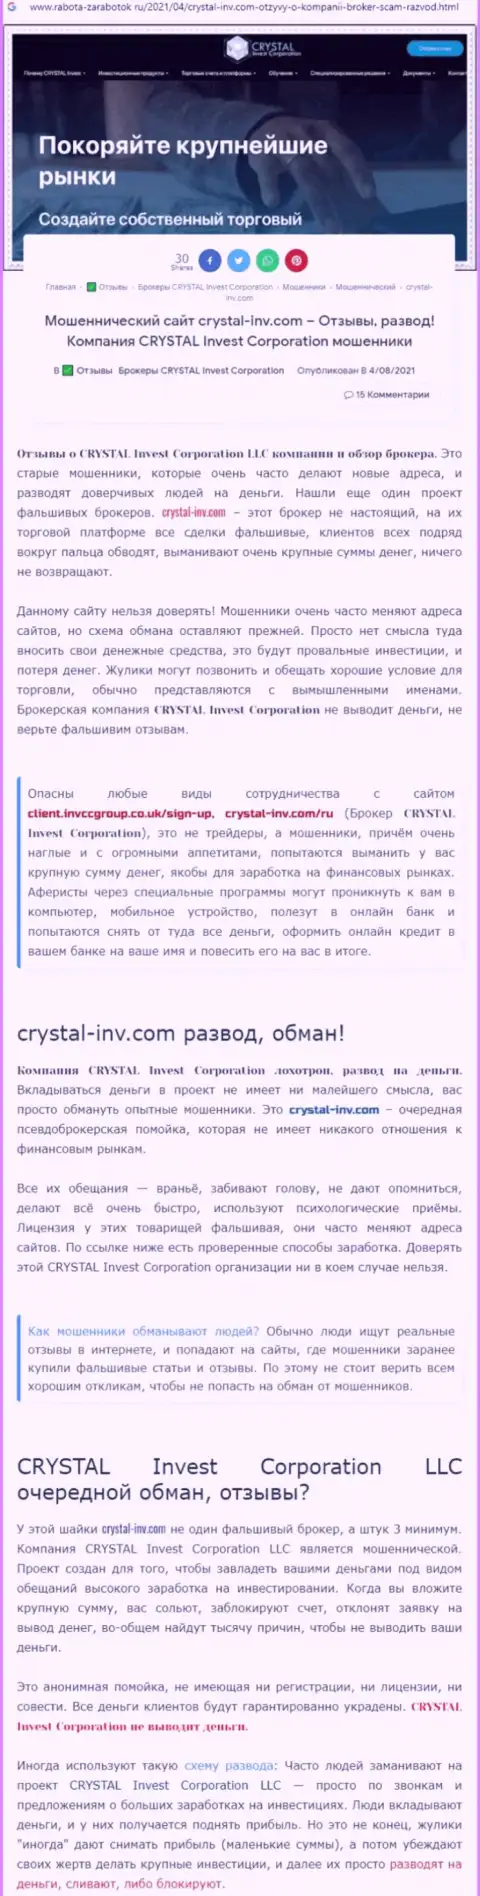 Материал, разоблачающий компанию Crystal-Inv Com, взятый с сайта с обзорами неправомерных действий различных организаций